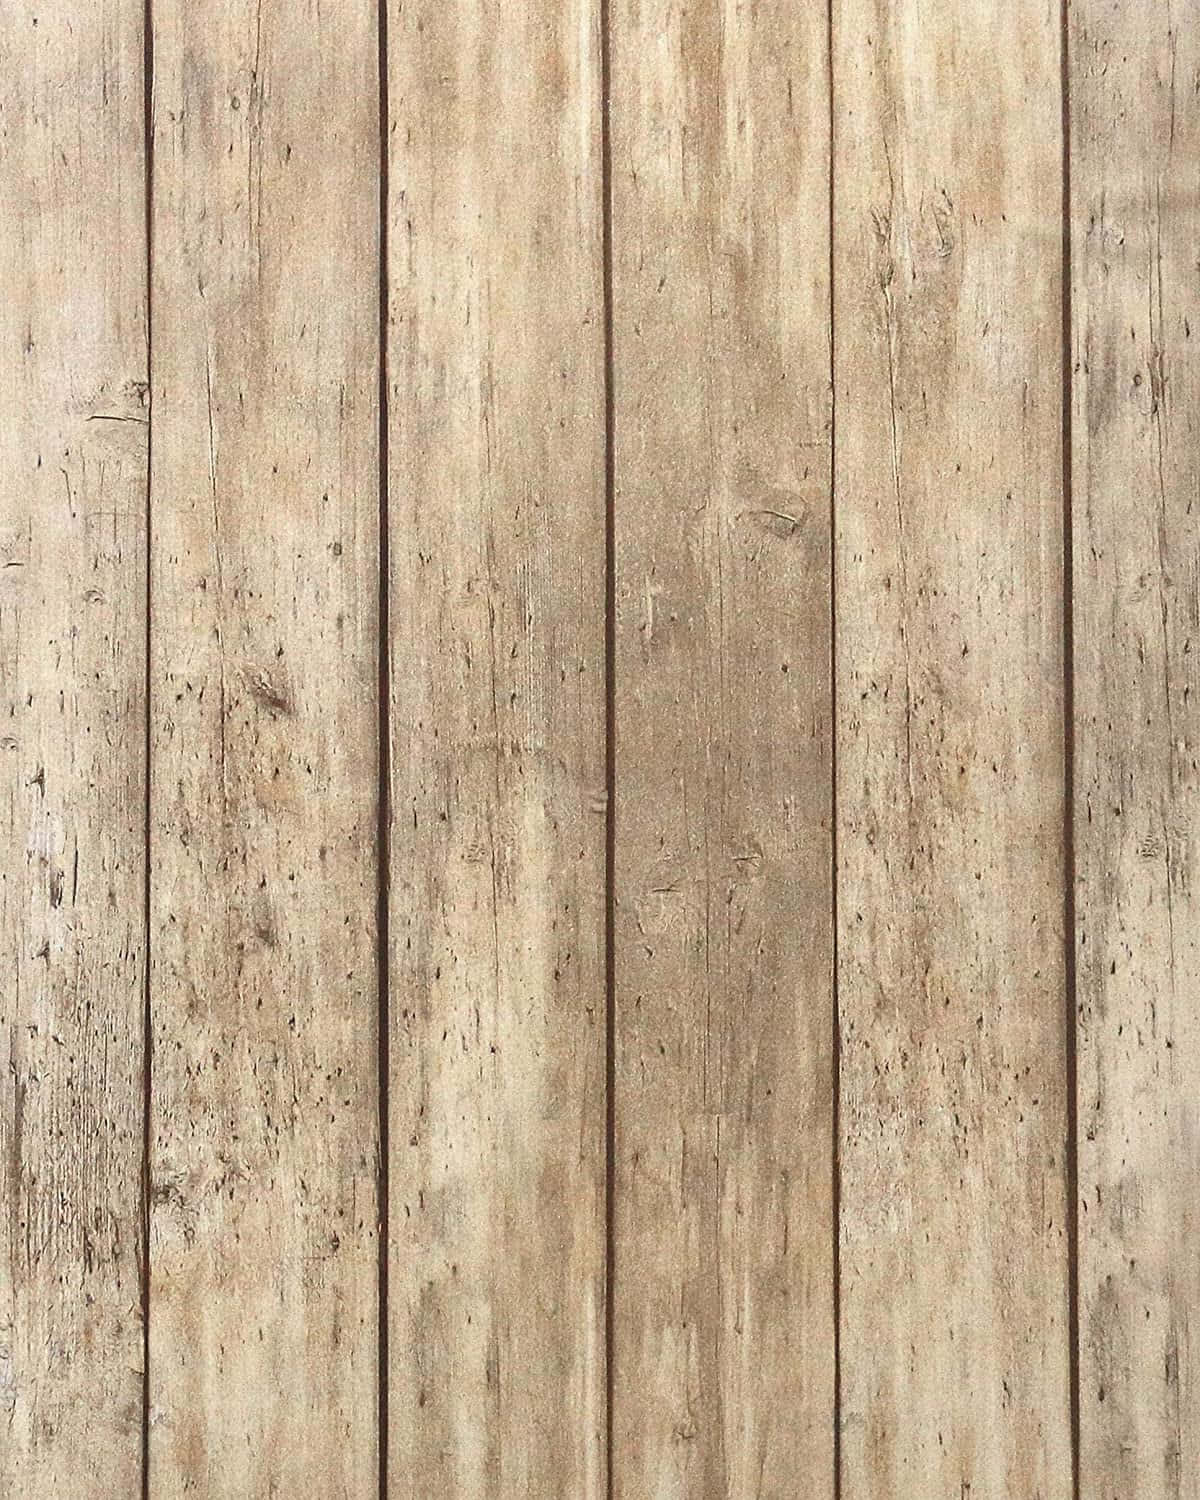 Wiederverwertetesscheunenholz Mit Einem Rustikalen Aussehen Und Gefühl. Wallpaper